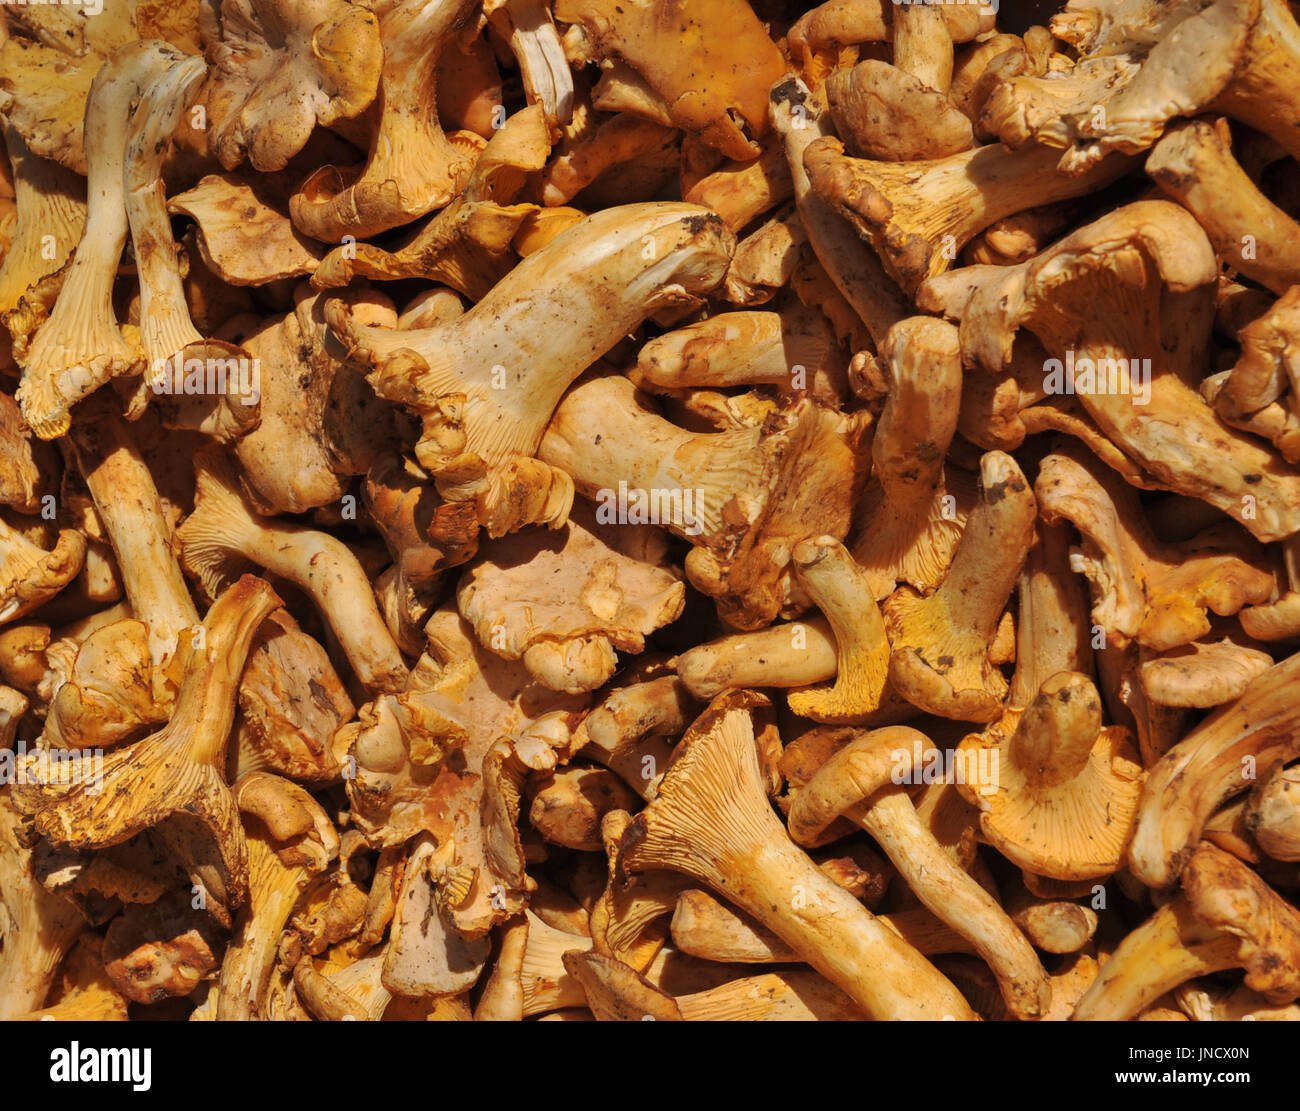 Gruppo di girolle fungo in un mercato, Francia meridionale Foto Stock